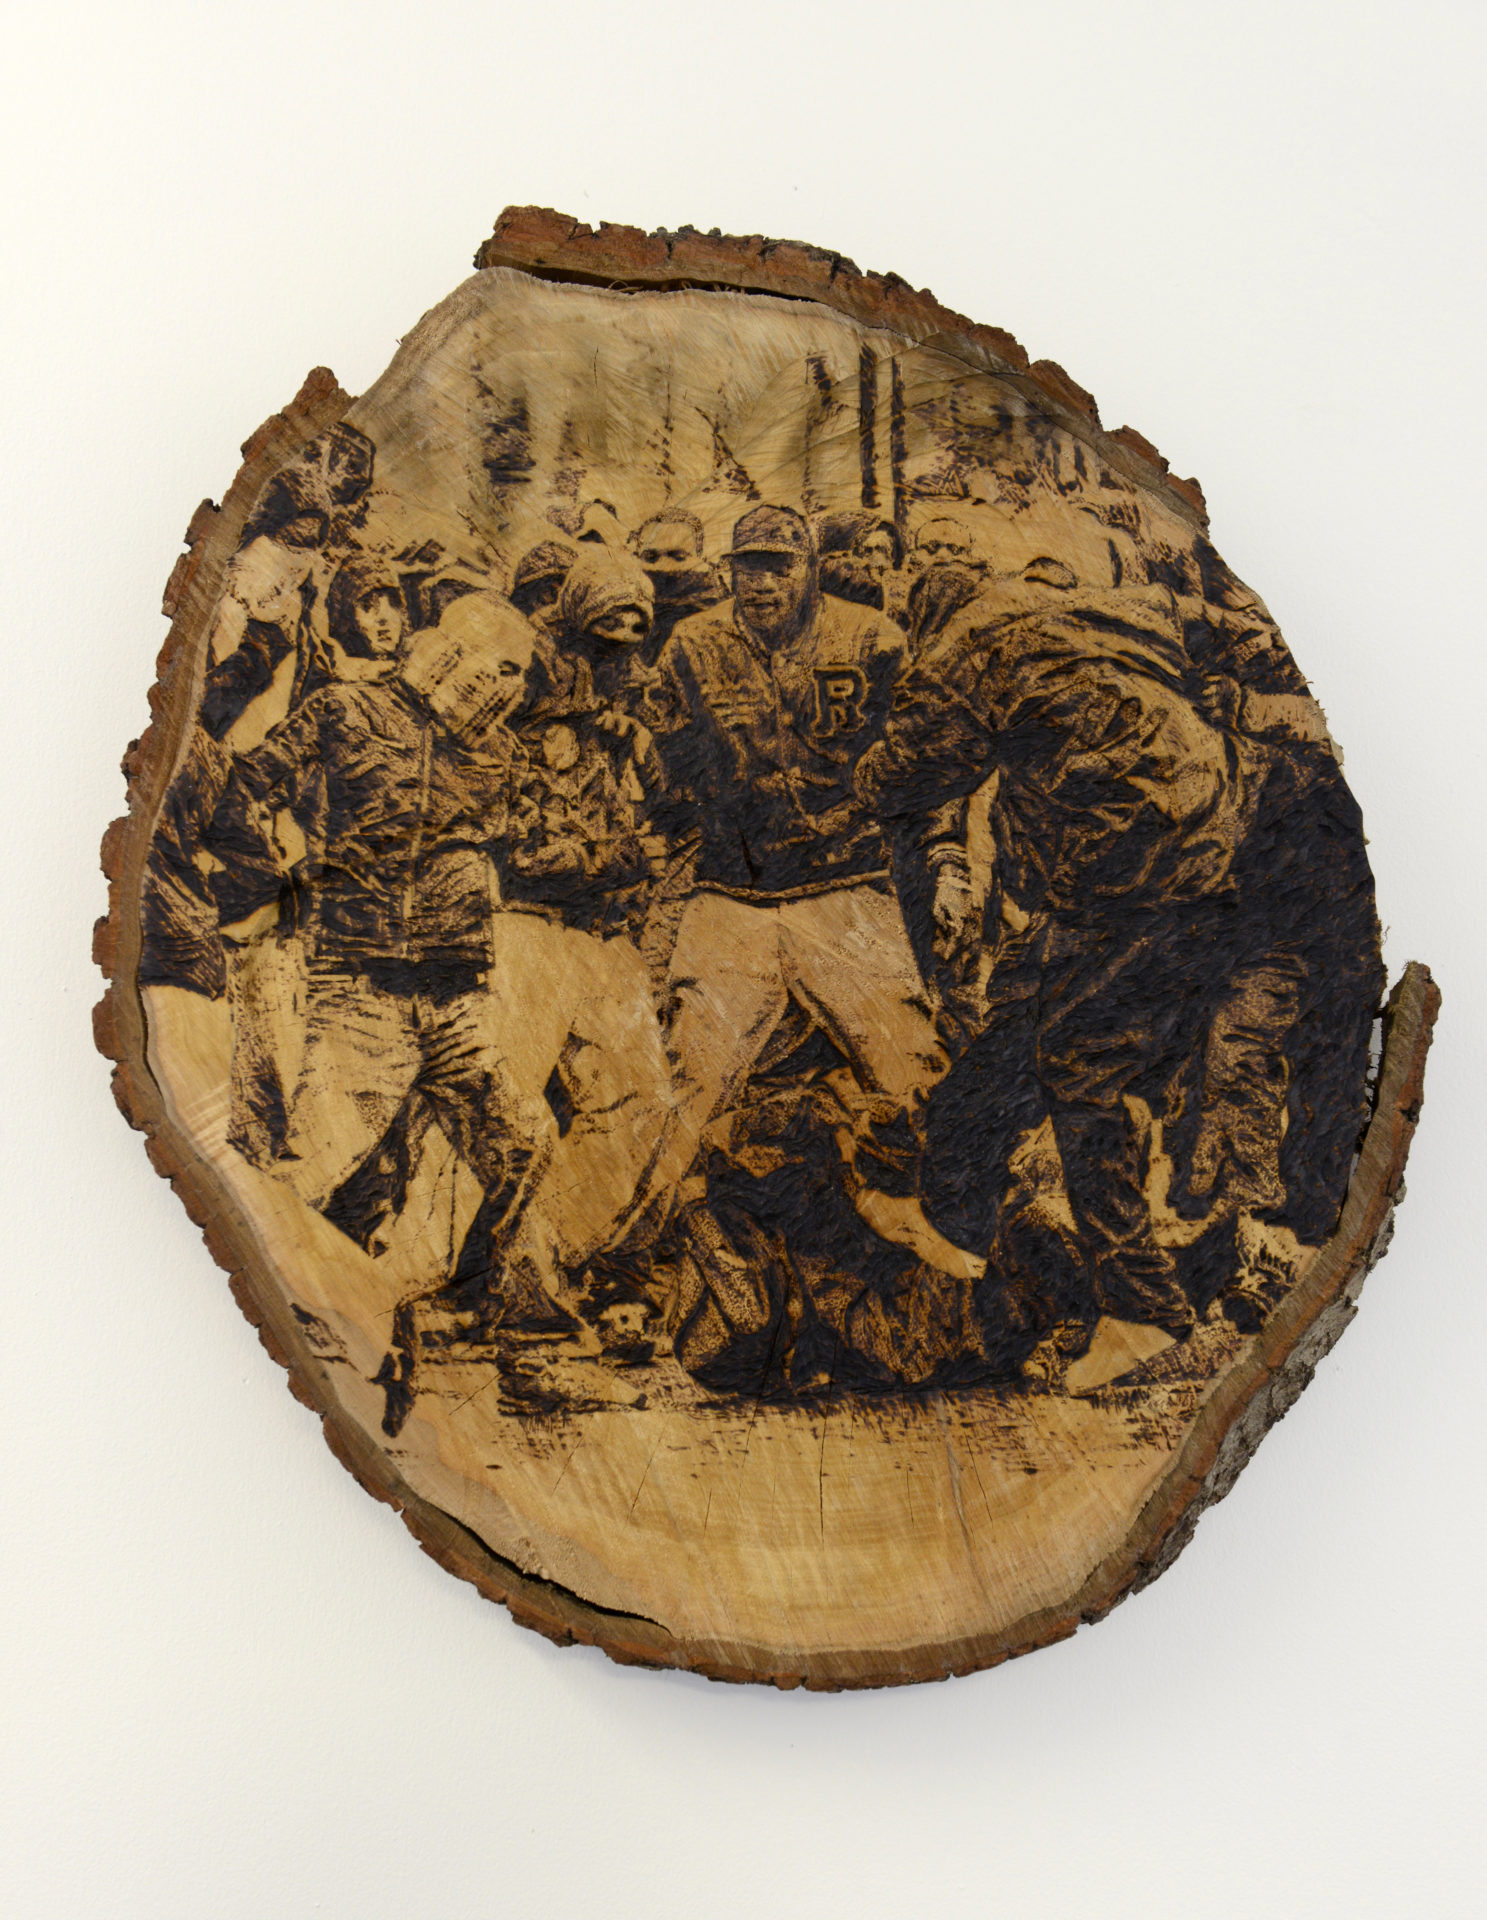 Sans titre 2, pyrogravure sur bois, 50 x 40 cm, 2015, Collection privée